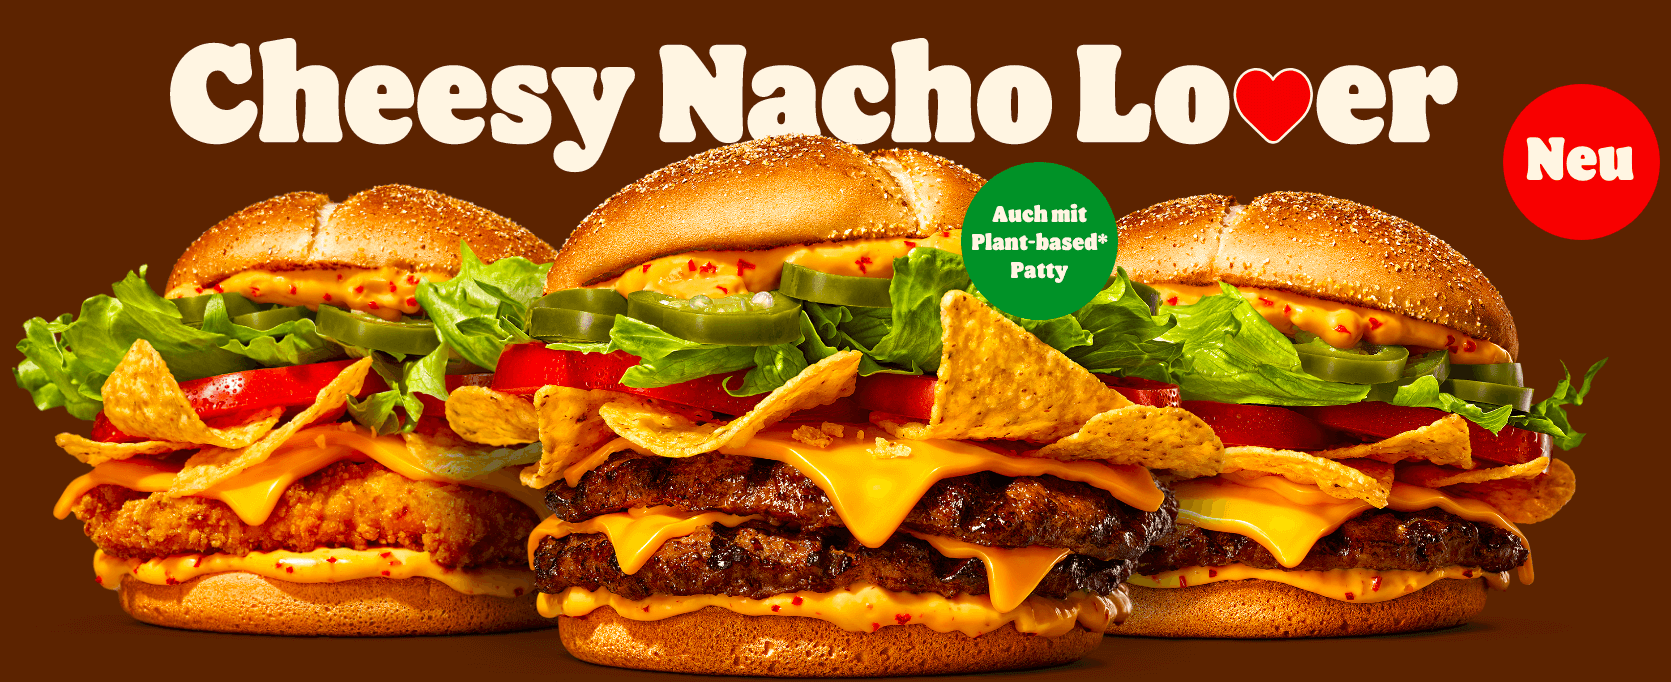 Burger King Cheesy Nacho Lover